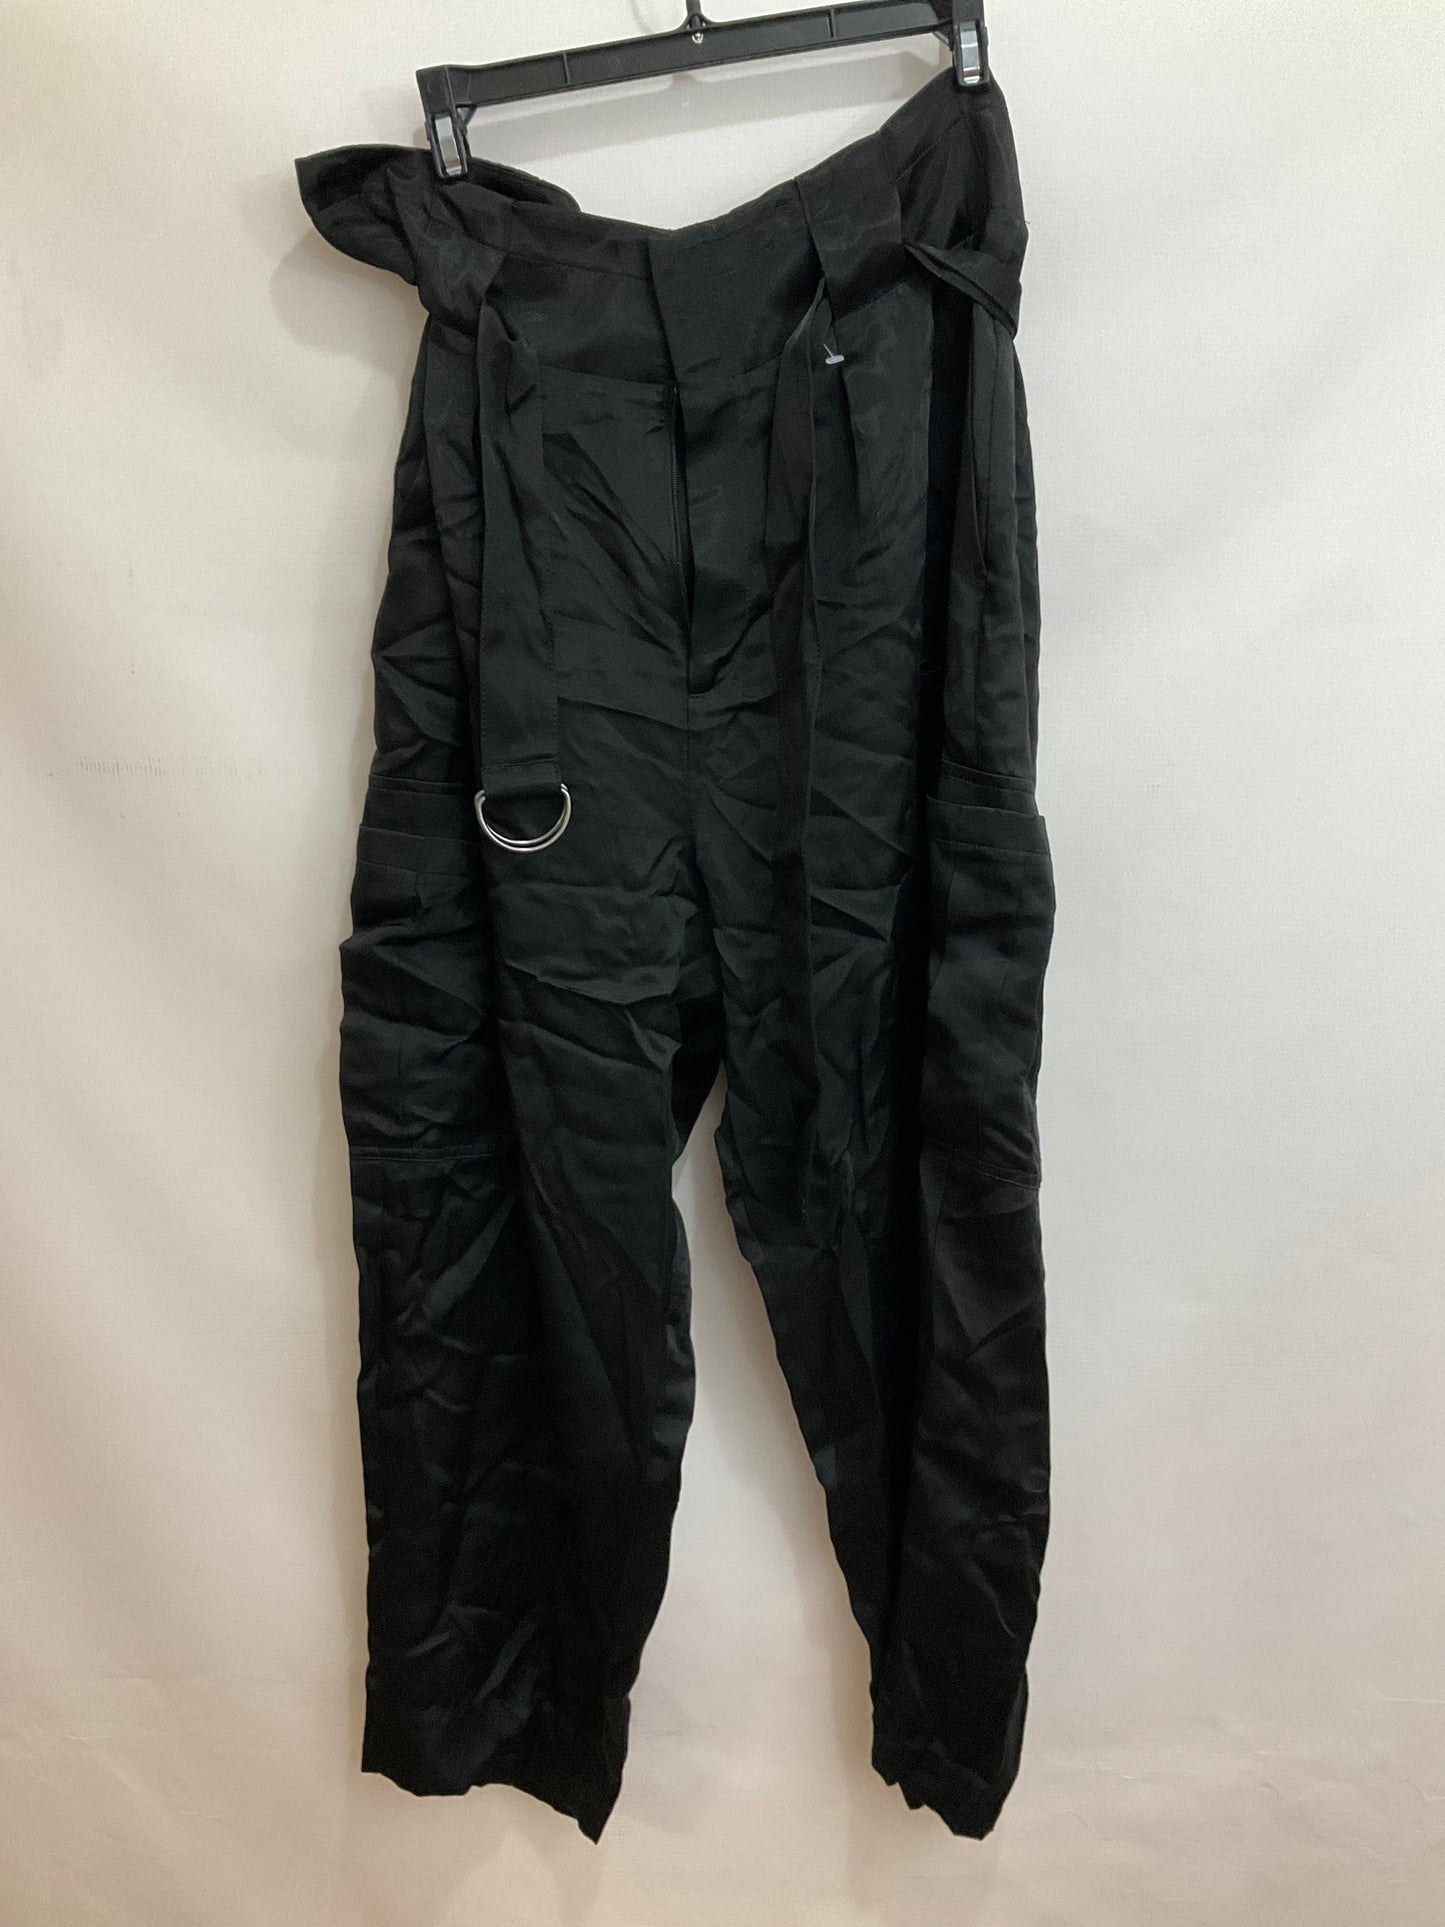 Black Pants Work/dress Banana Republic O, Size 14